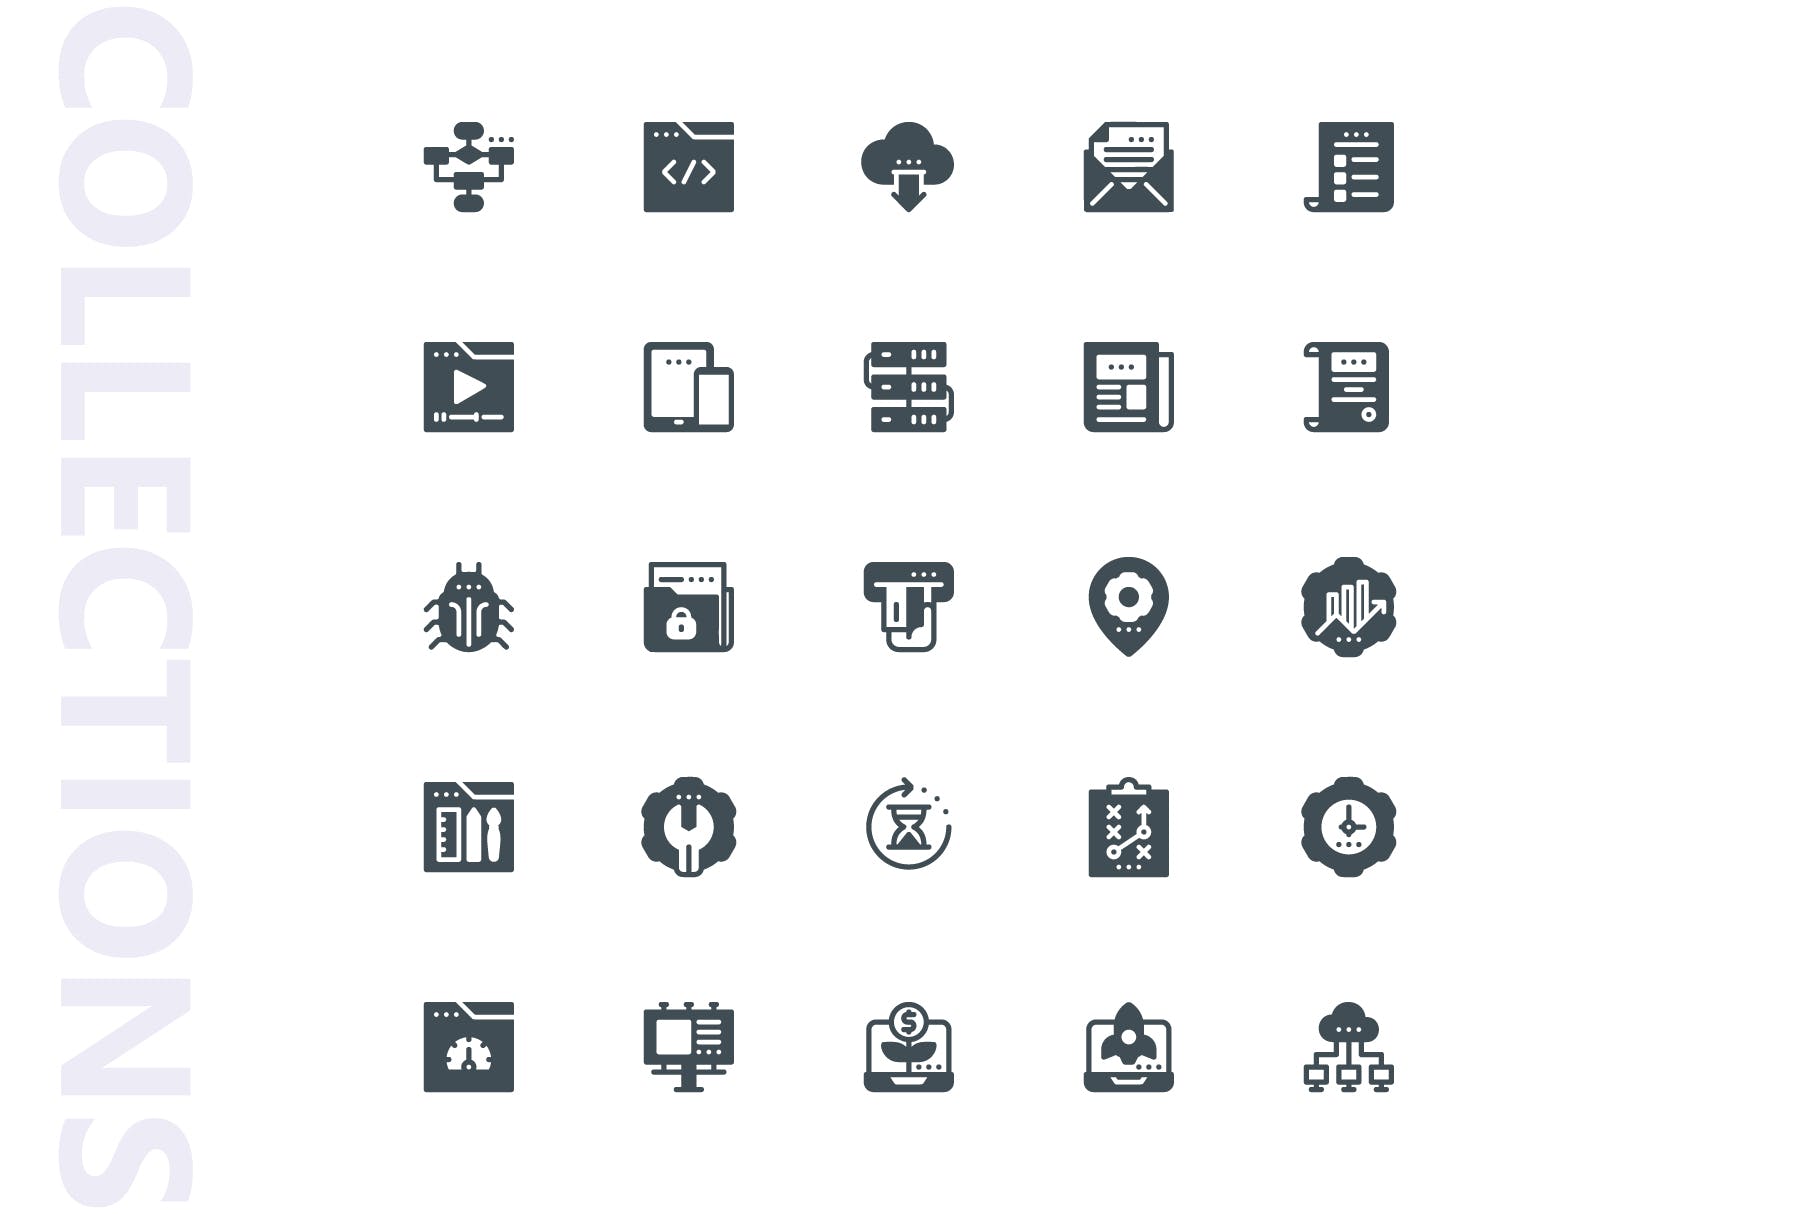 25枚SEO搜索引擎优化营销矢量字体蚂蚁素材精选图标v1 SEO Marketing Glyph Icons插图(3)